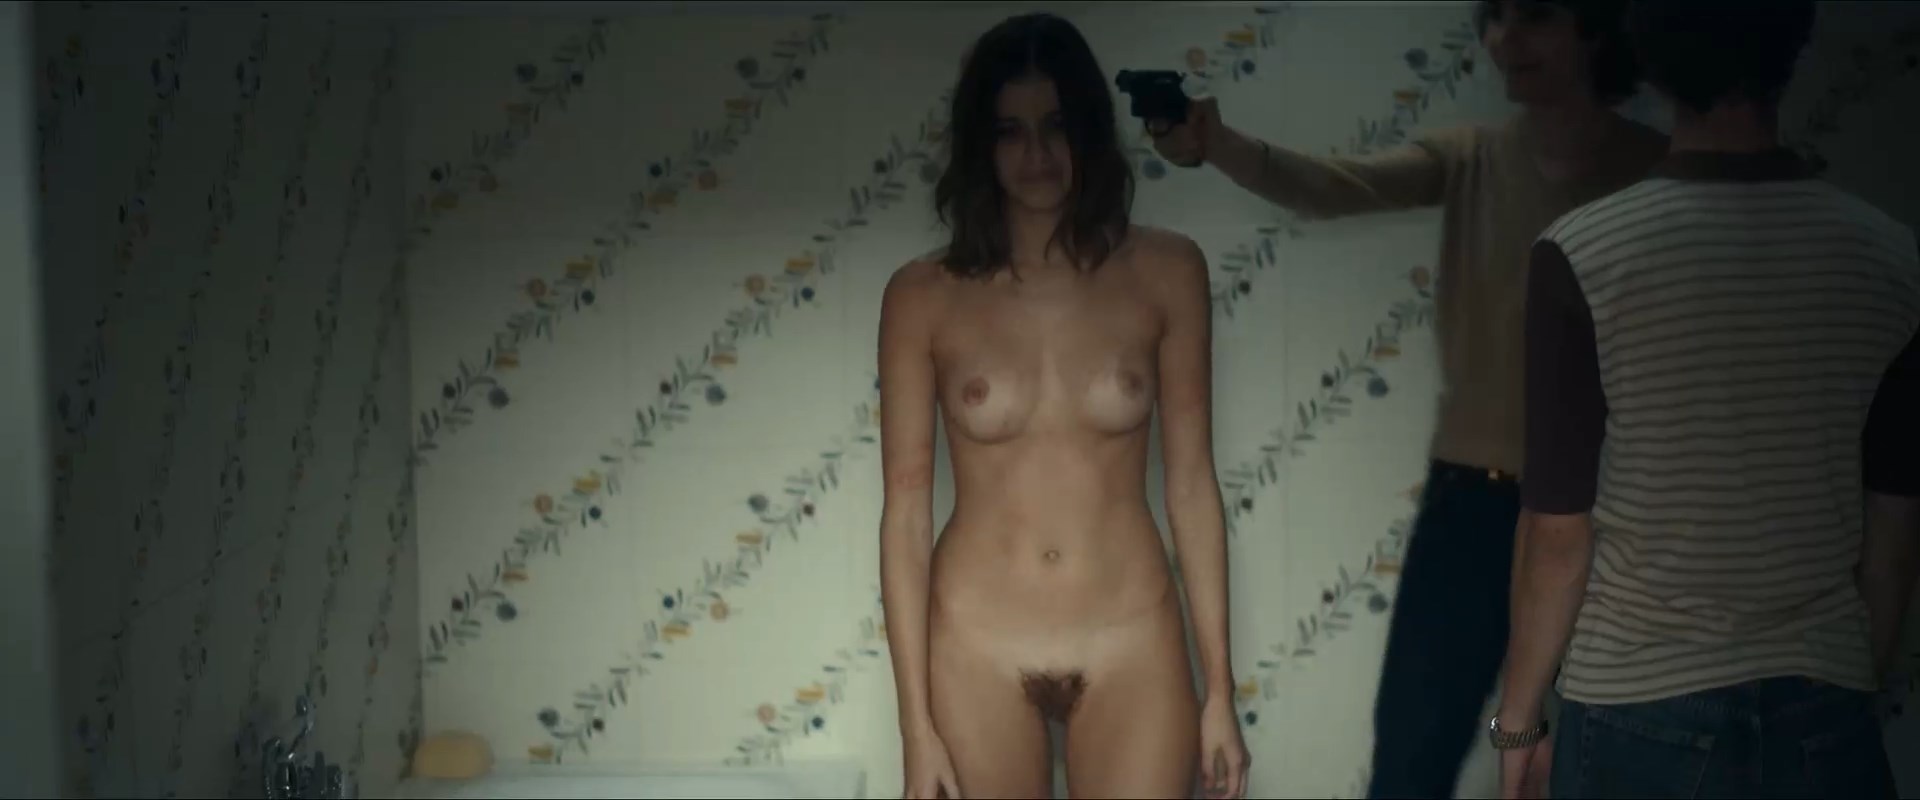 Catholic Nudism - Benedetta Porcaroli Nude Â» Celebs Nude Video - NudeCelebVideo.Net